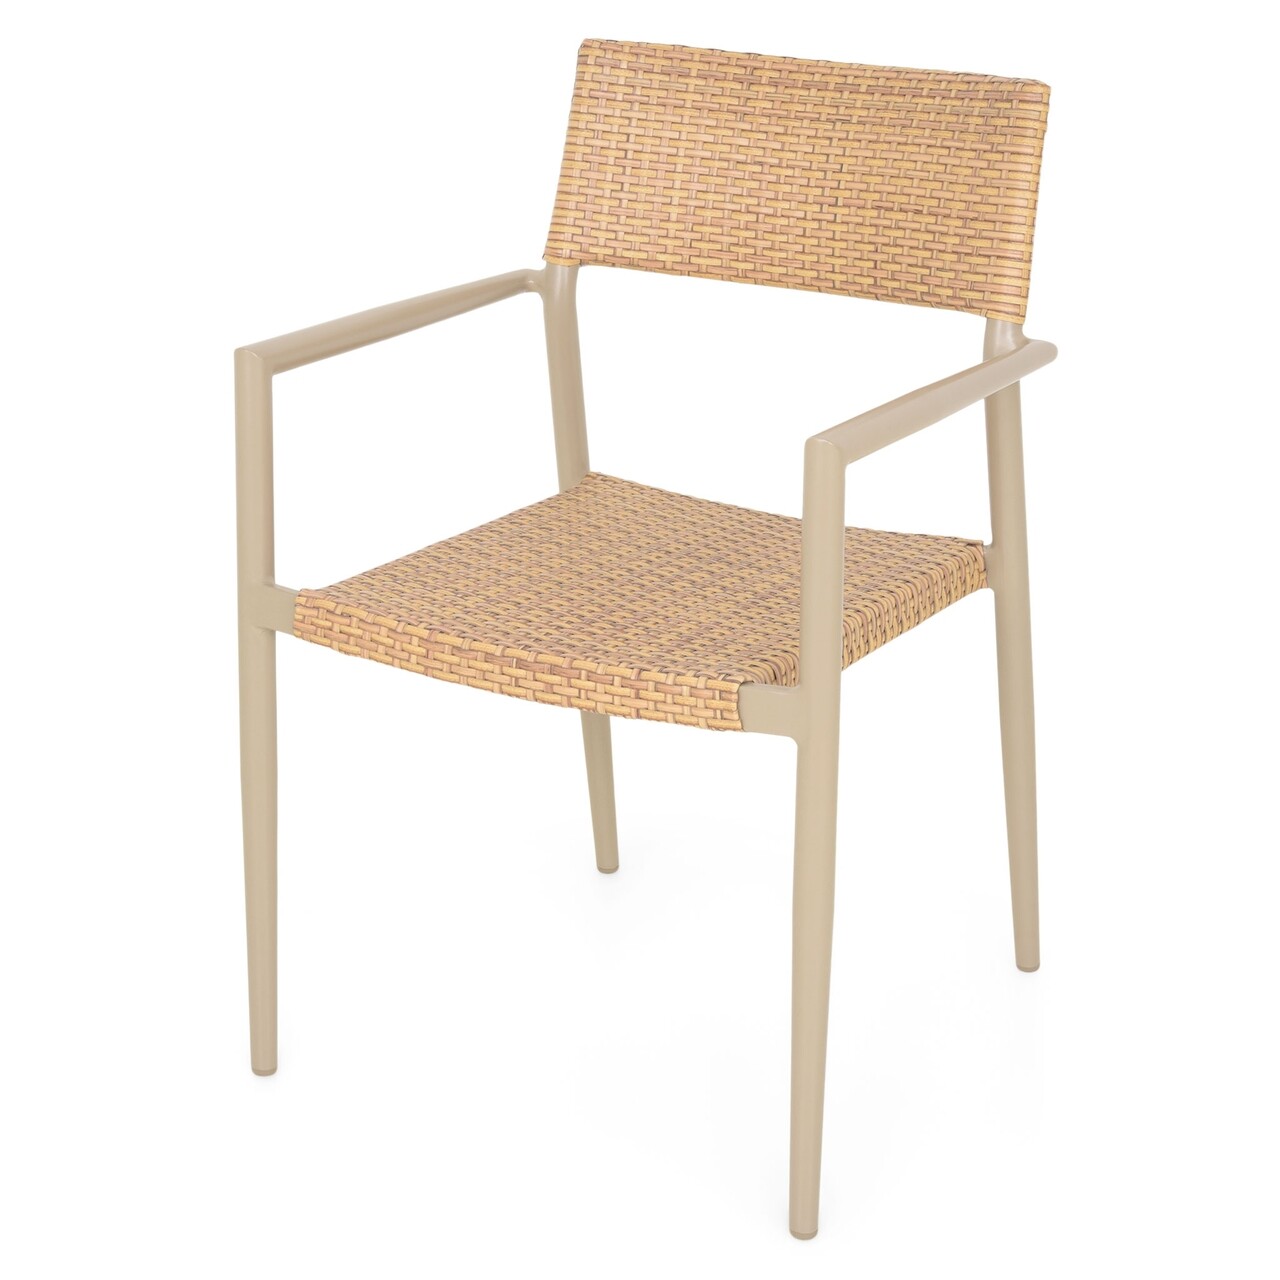 Soria Egymásra helyezhető szék, 59.5 x 55 x 85.5 cm, alumínium, pezsgőszín/természetes